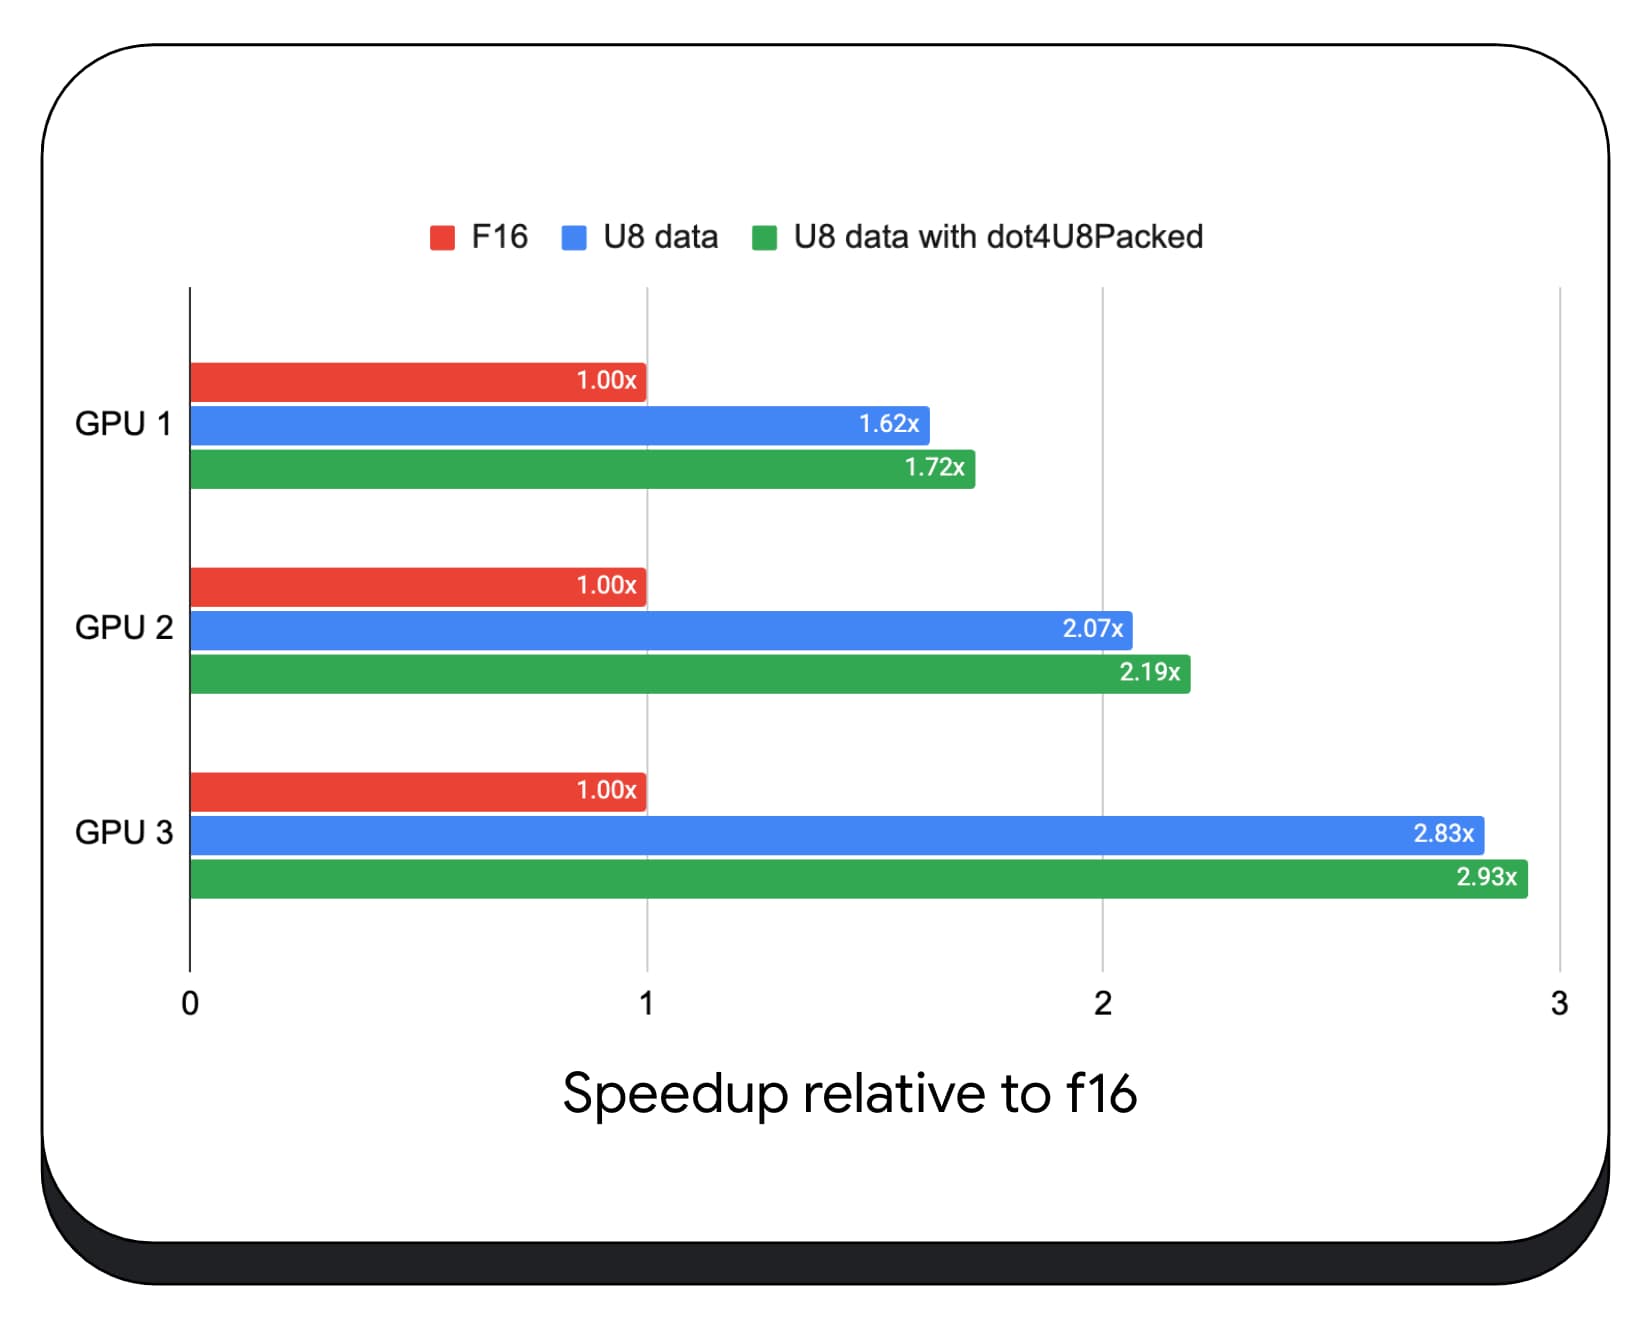 اسکرین شات افزایش سرعت ضرب ماتریس-بردار: f16 در مقابل u8